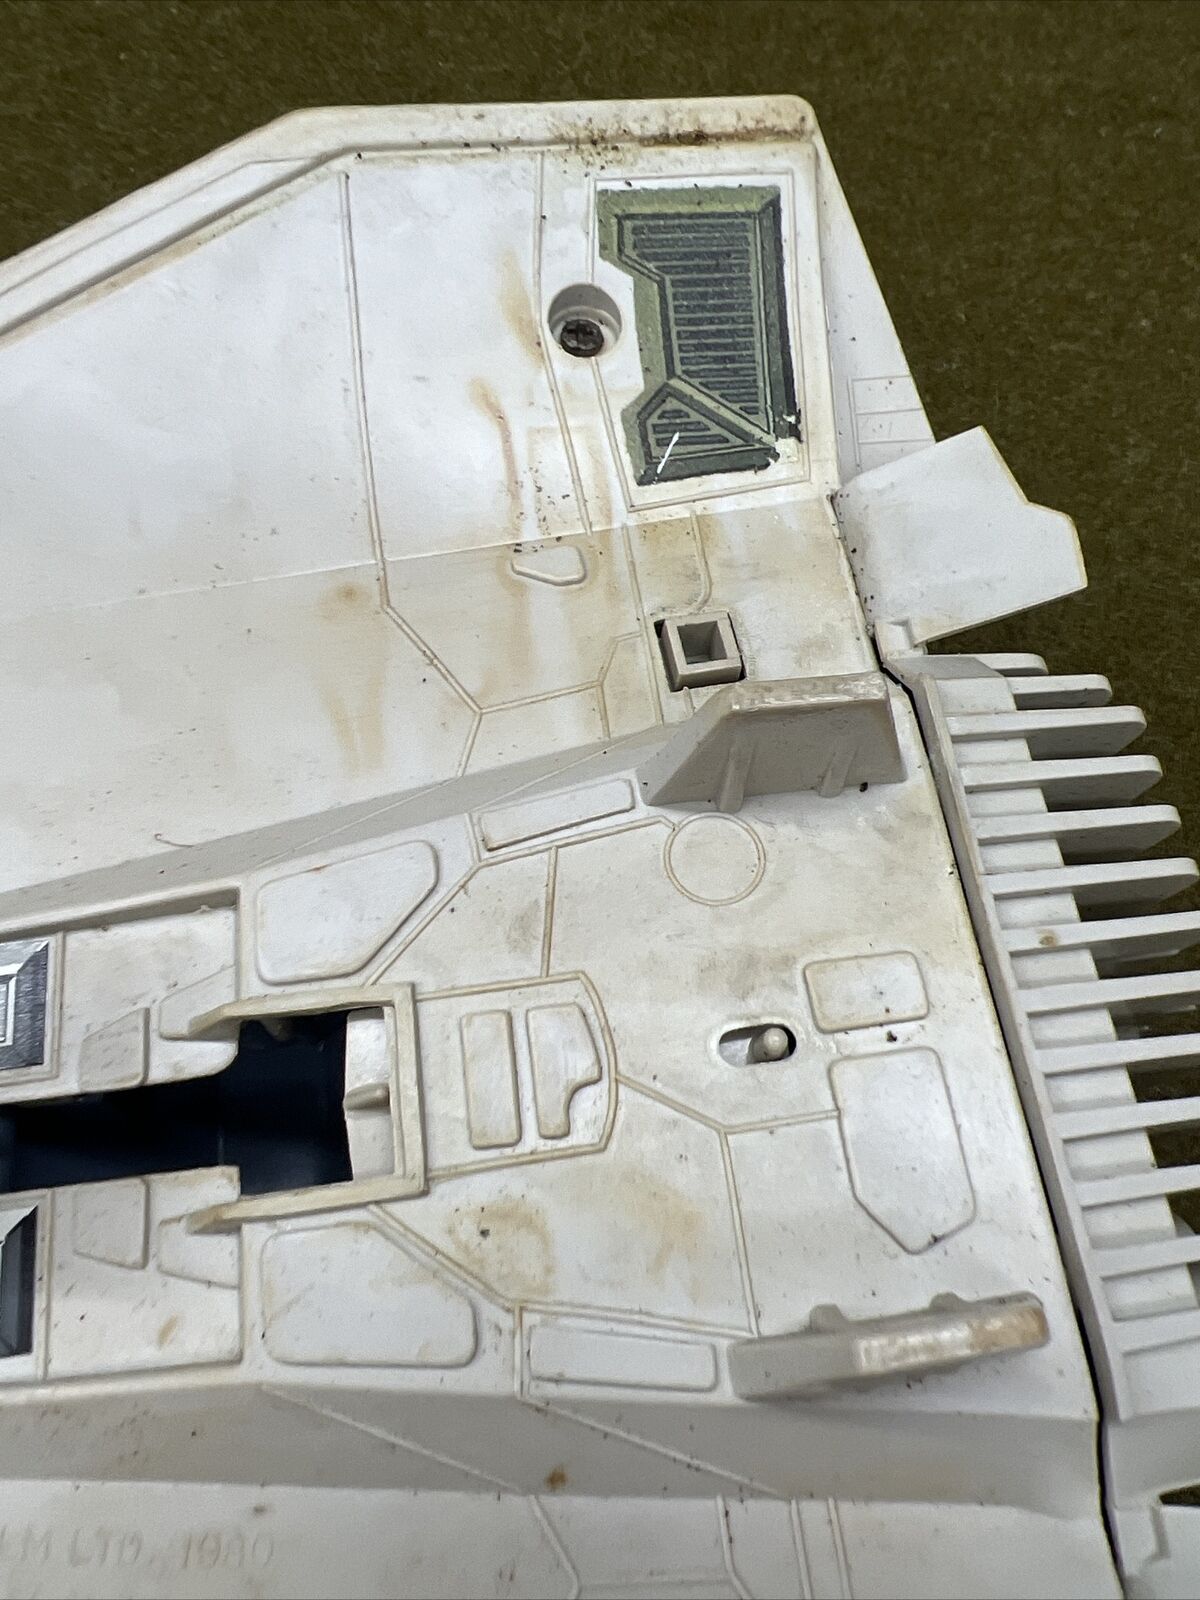 Rebel Armored Snowspeeder sold